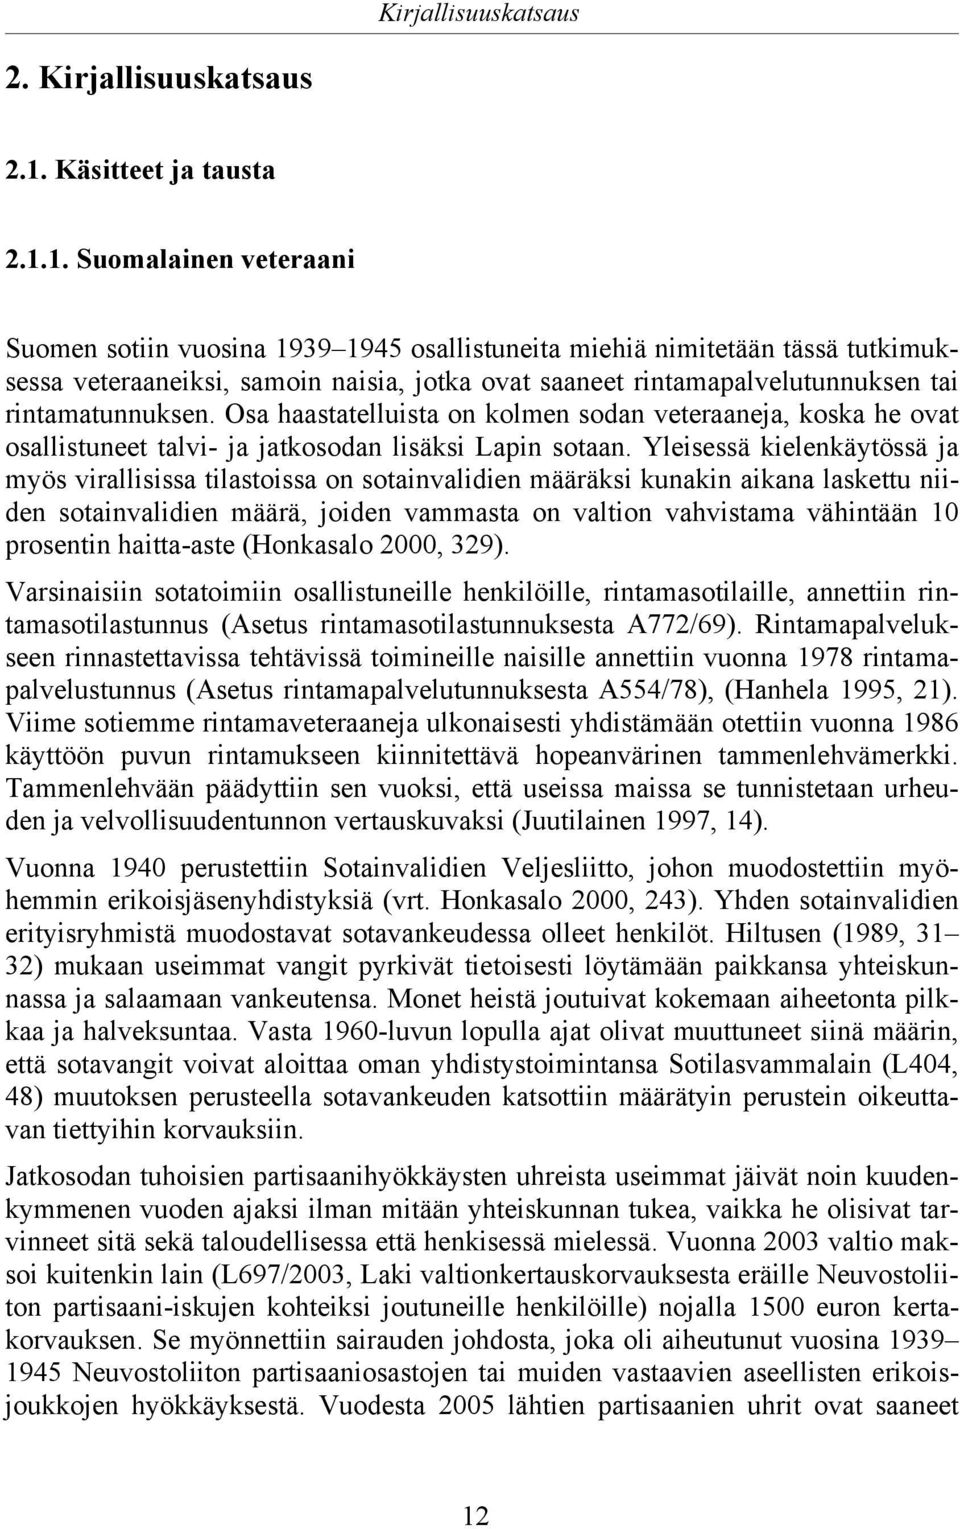 1. Suomalainen veteraani Suomen sotiin vuosina 1939 1945 osallistuneita miehiä nimitetään tässä tutkimuksessa veteraaneiksi, samoin naisia, jotka ovat saaneet rintamapalvelutunnuksen tai